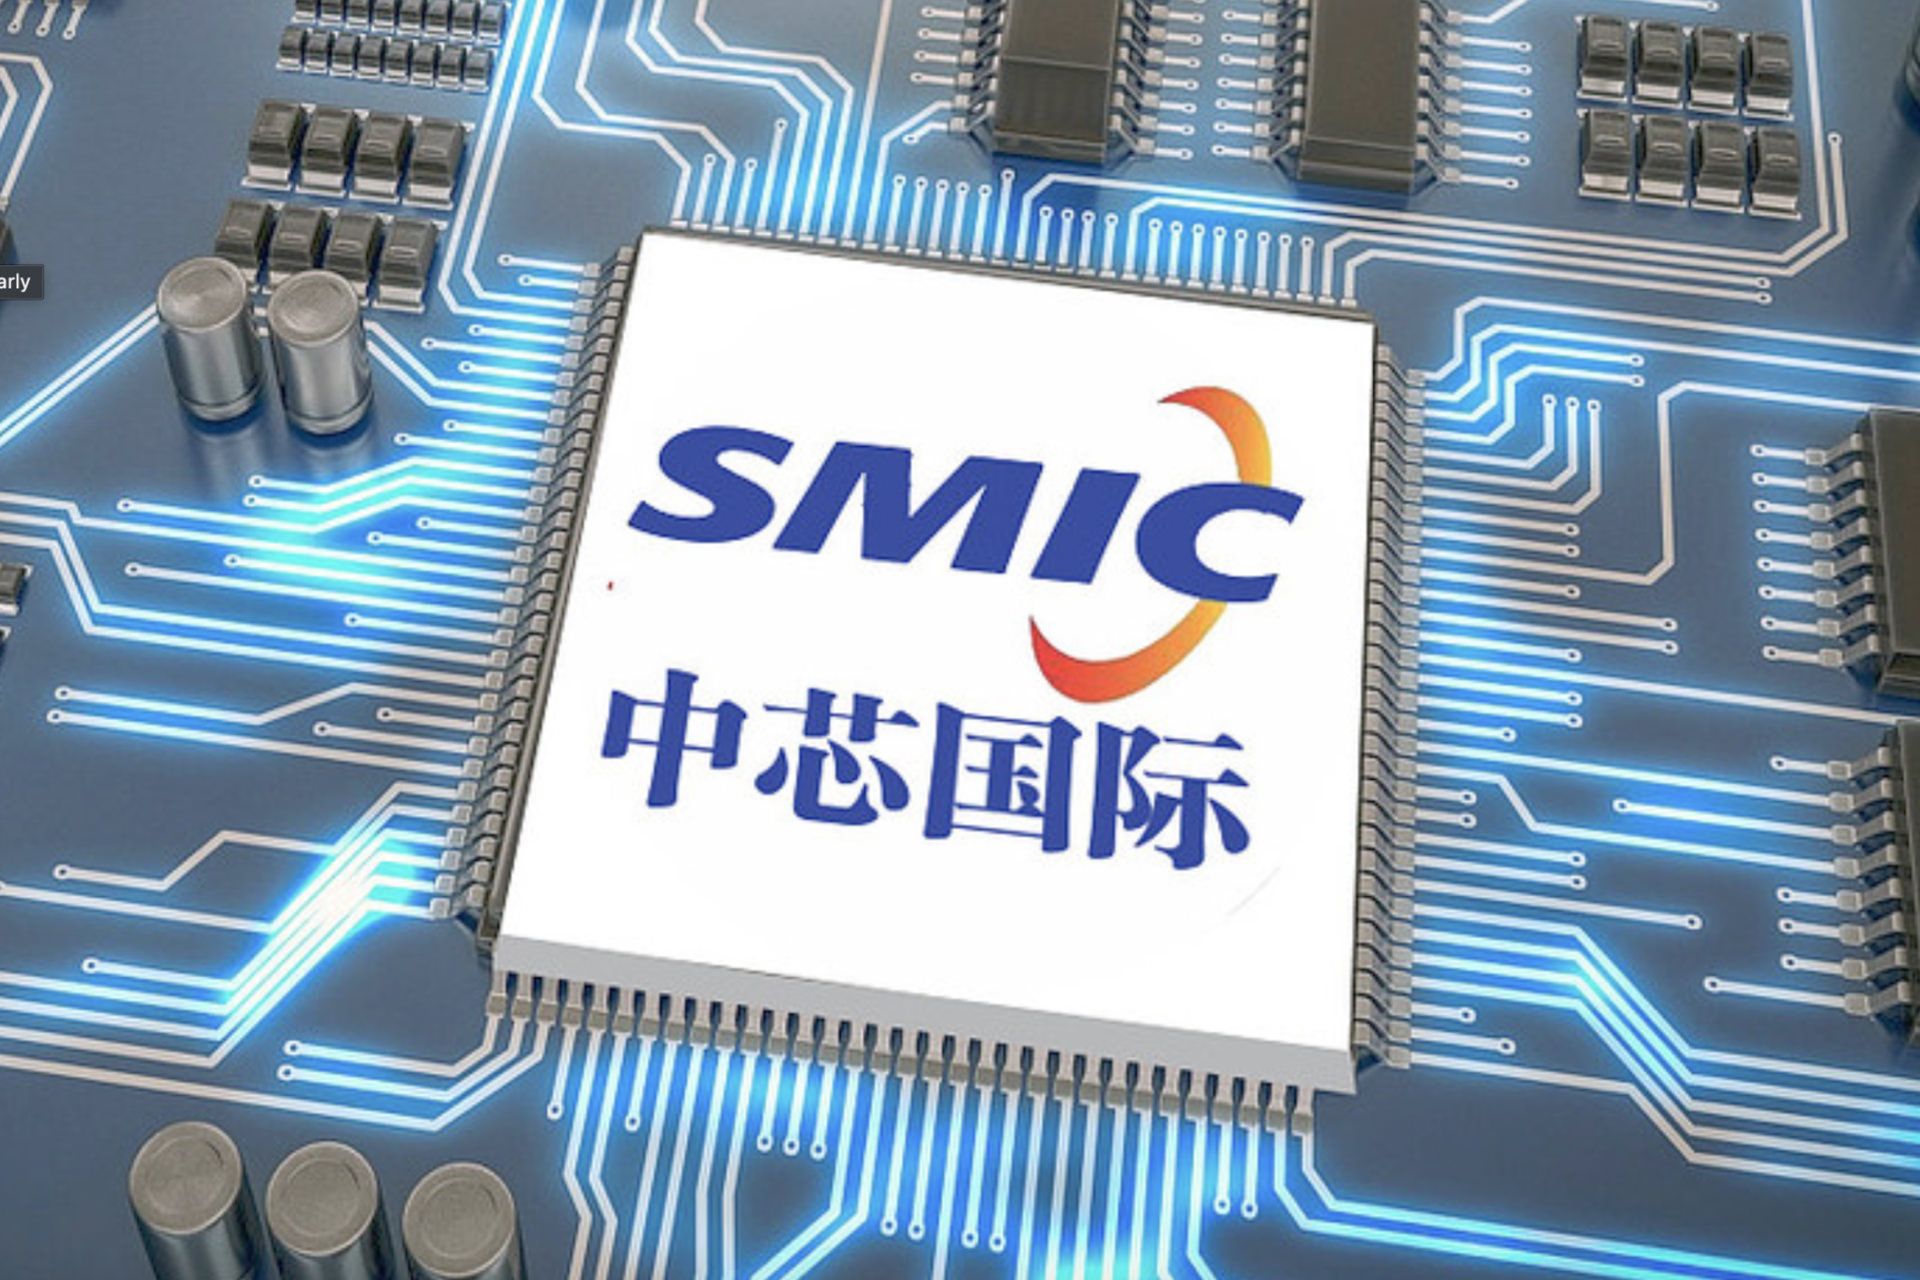 لوگو SMIC به زبان انگلیسی و چینی روی تراشه داخل مادربرد طرح گرافیکی